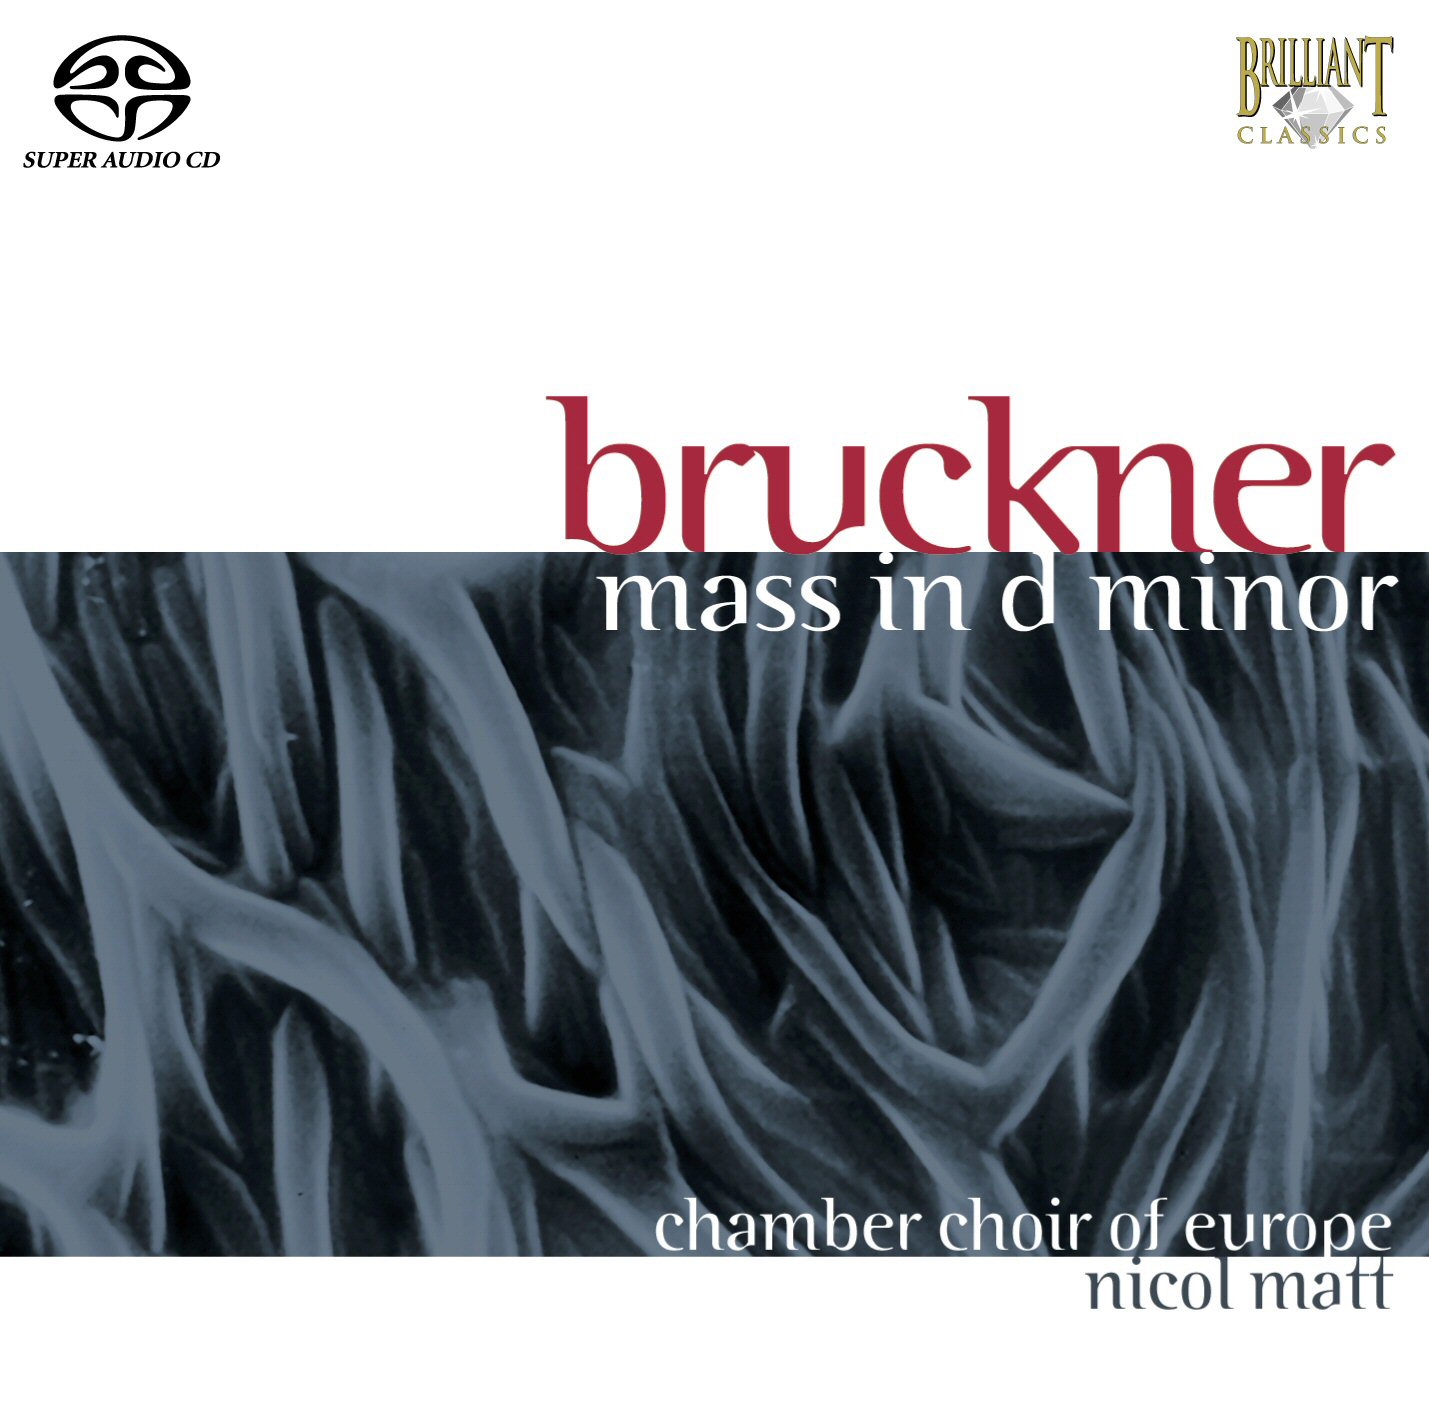 Bruckner Mass in d minor